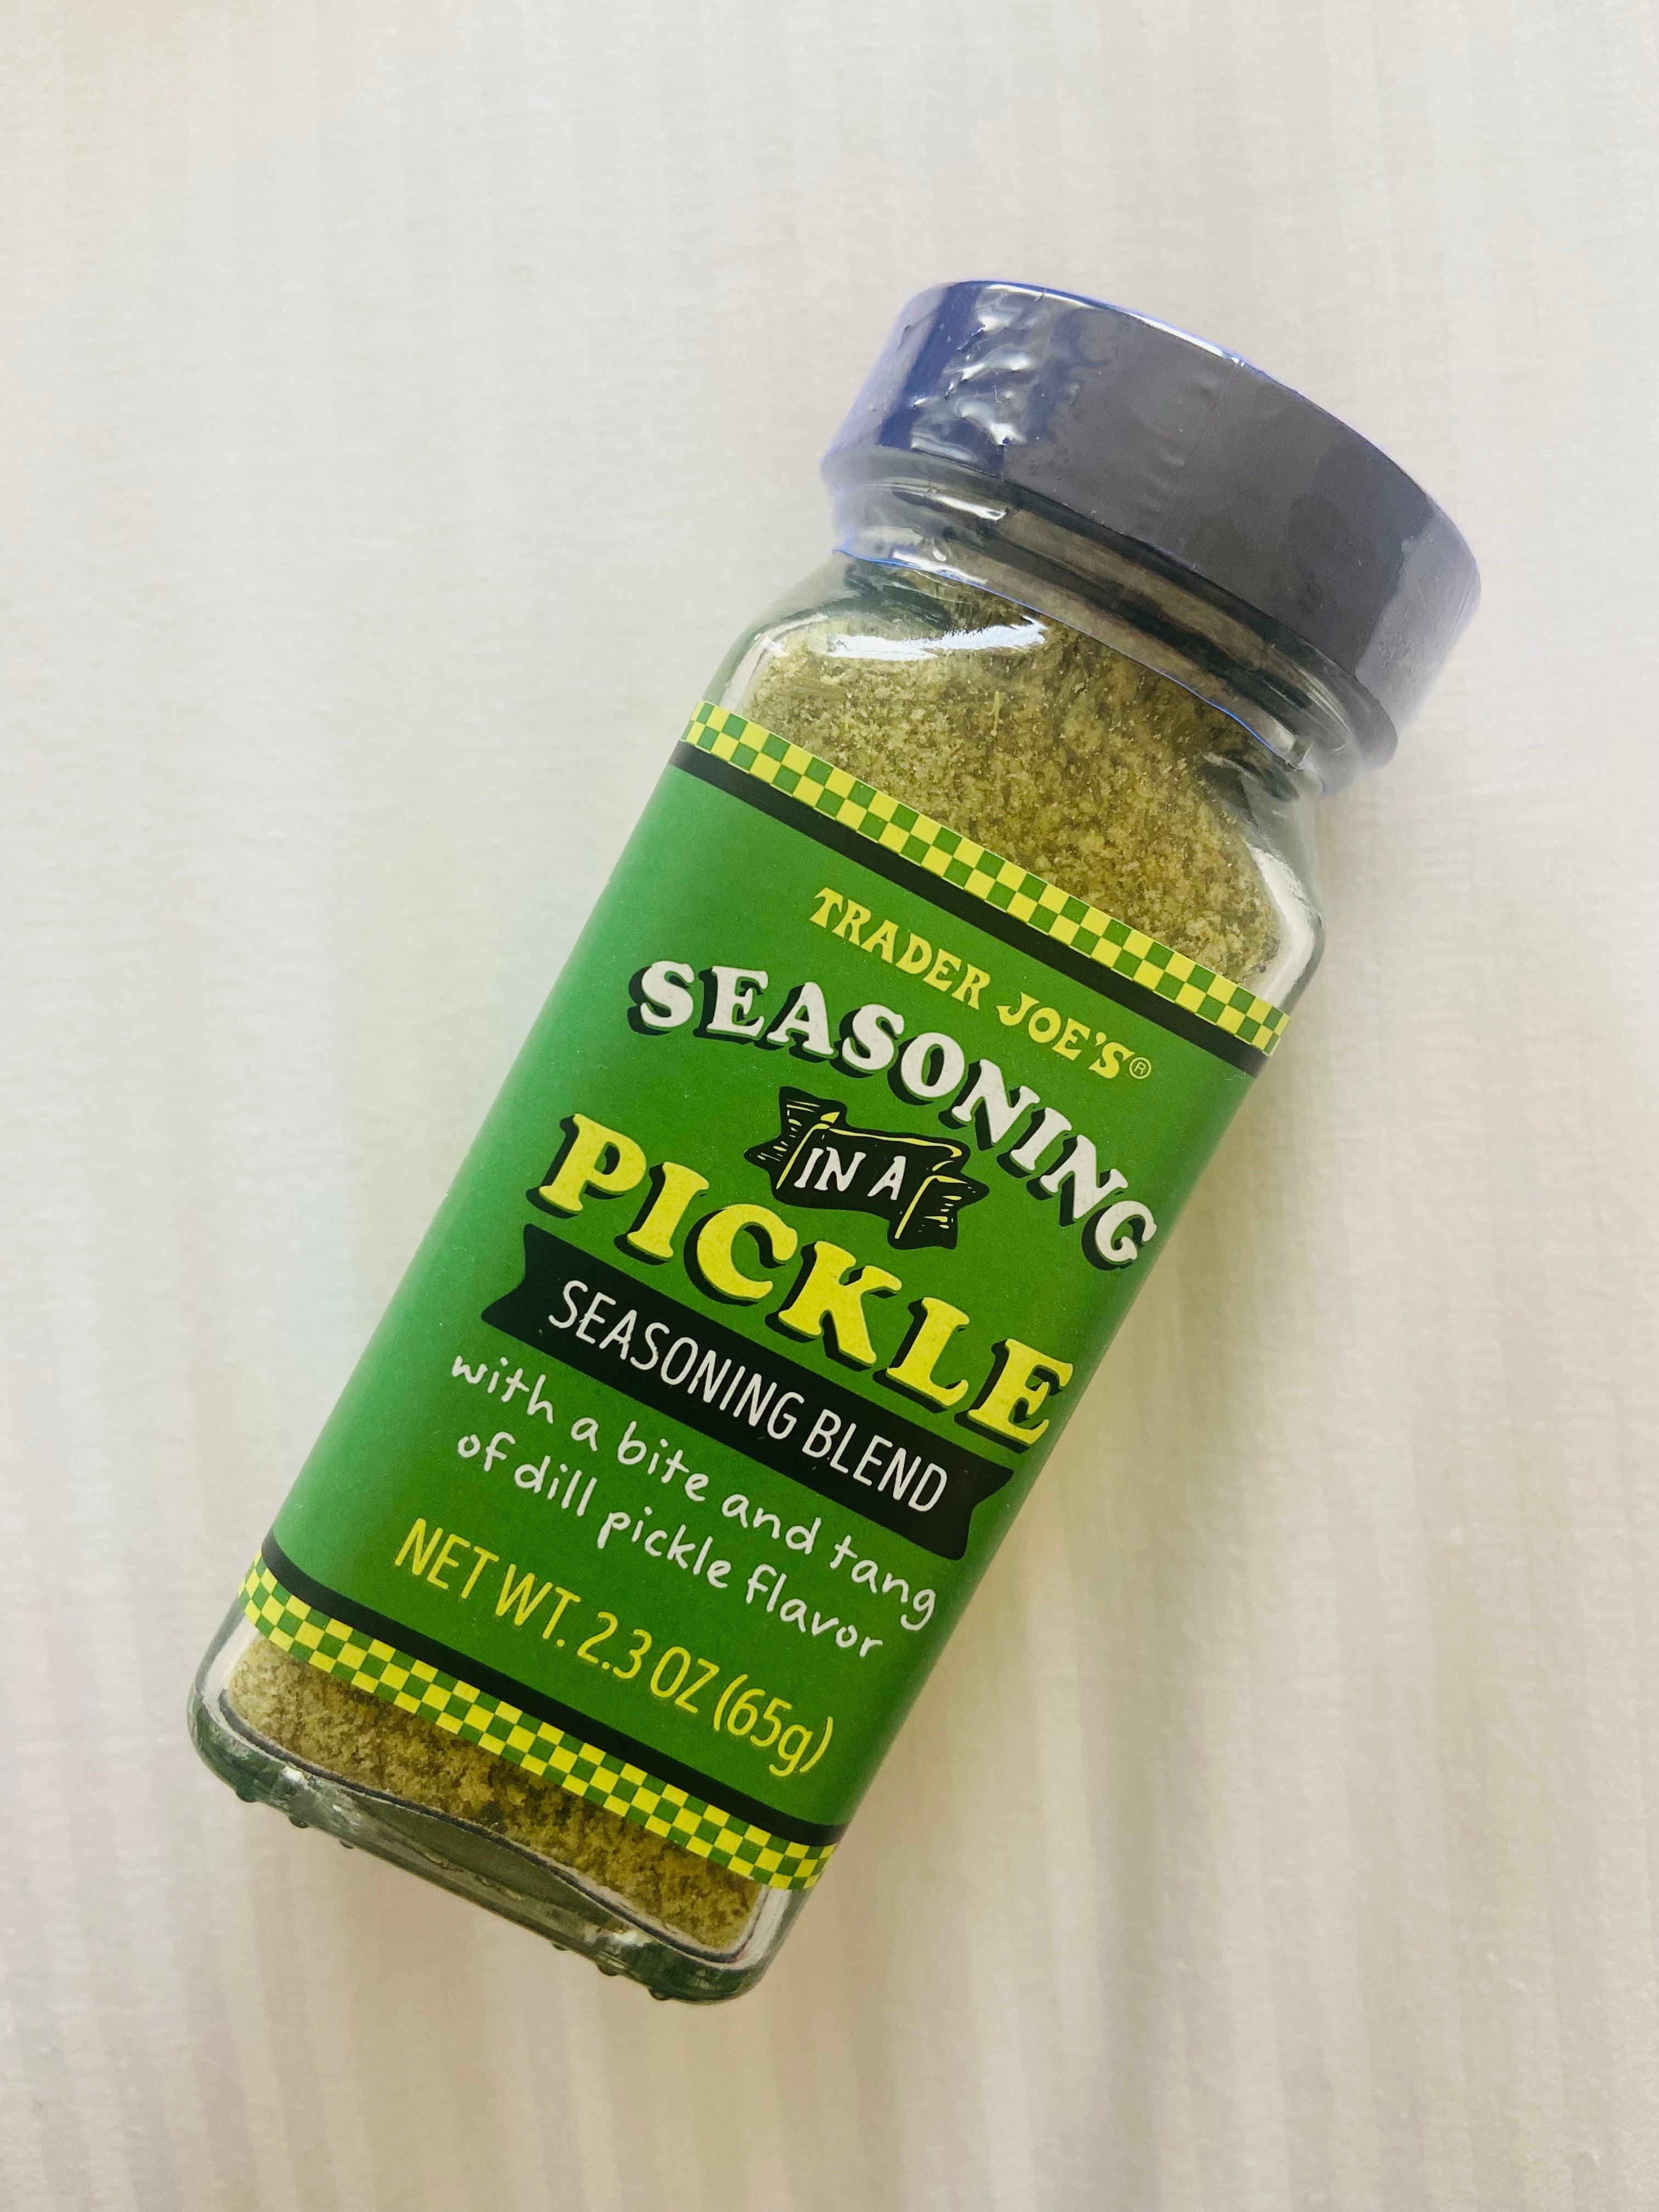 Seasoning in a pickle seasoning blend - Trader Joe's